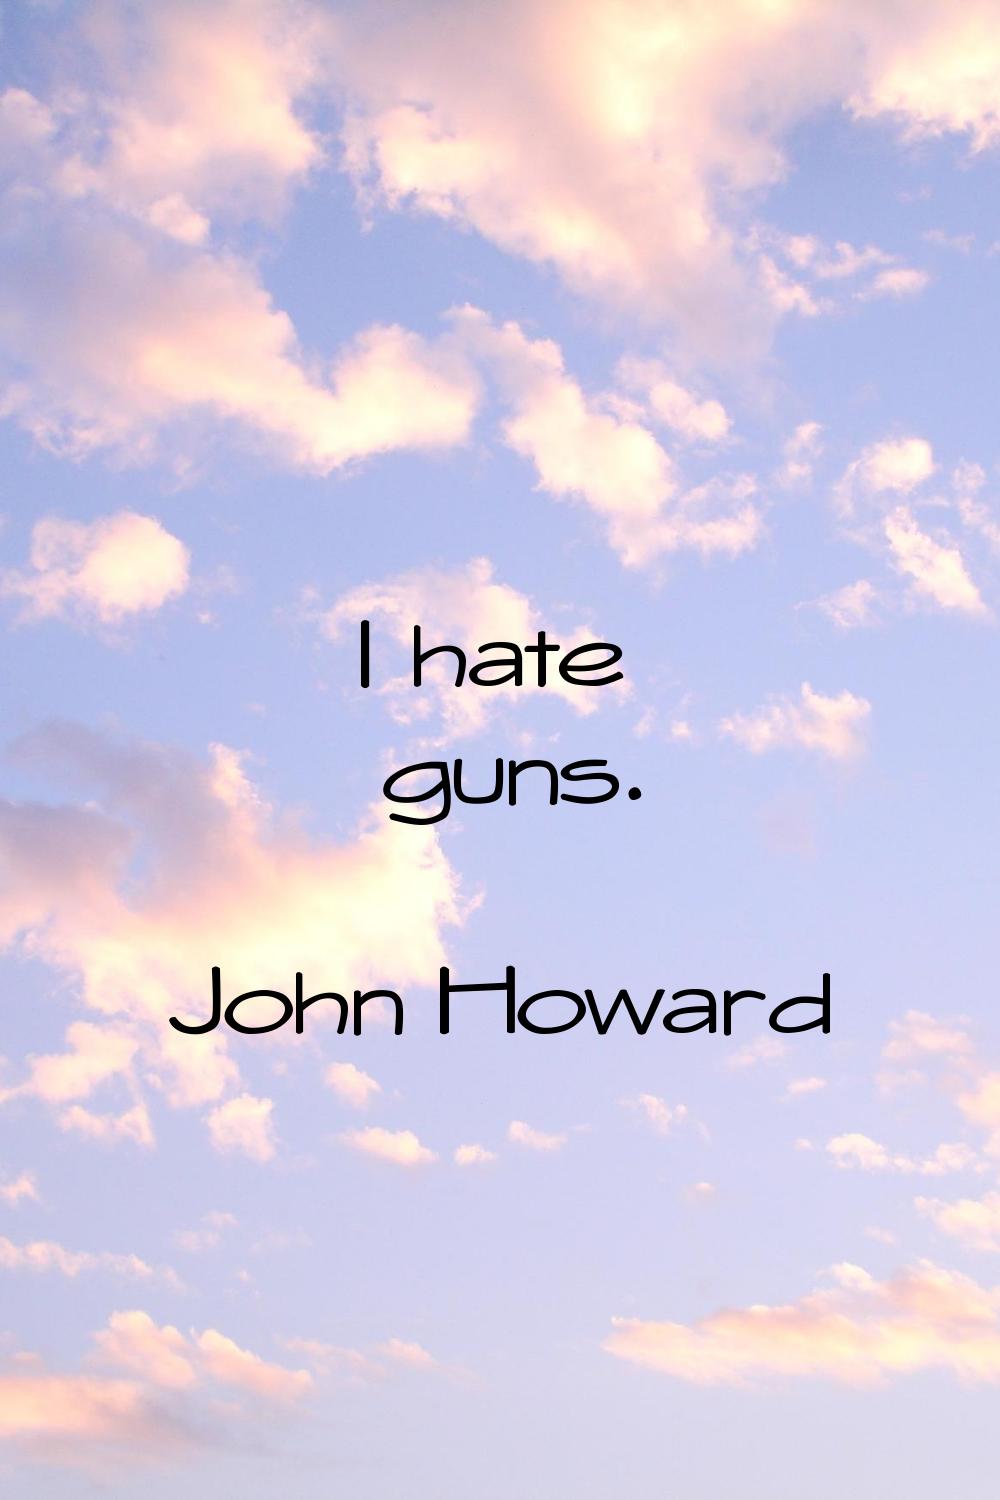 I hate guns.